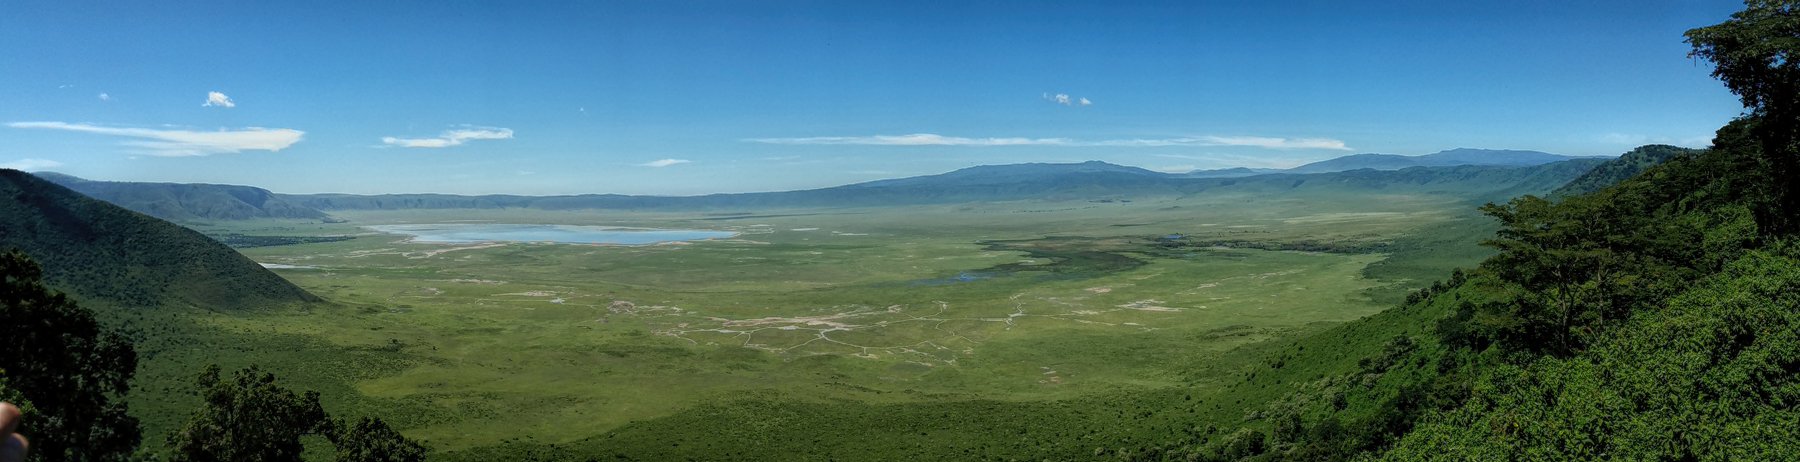 panoramic view of the Ngorongoro Crater